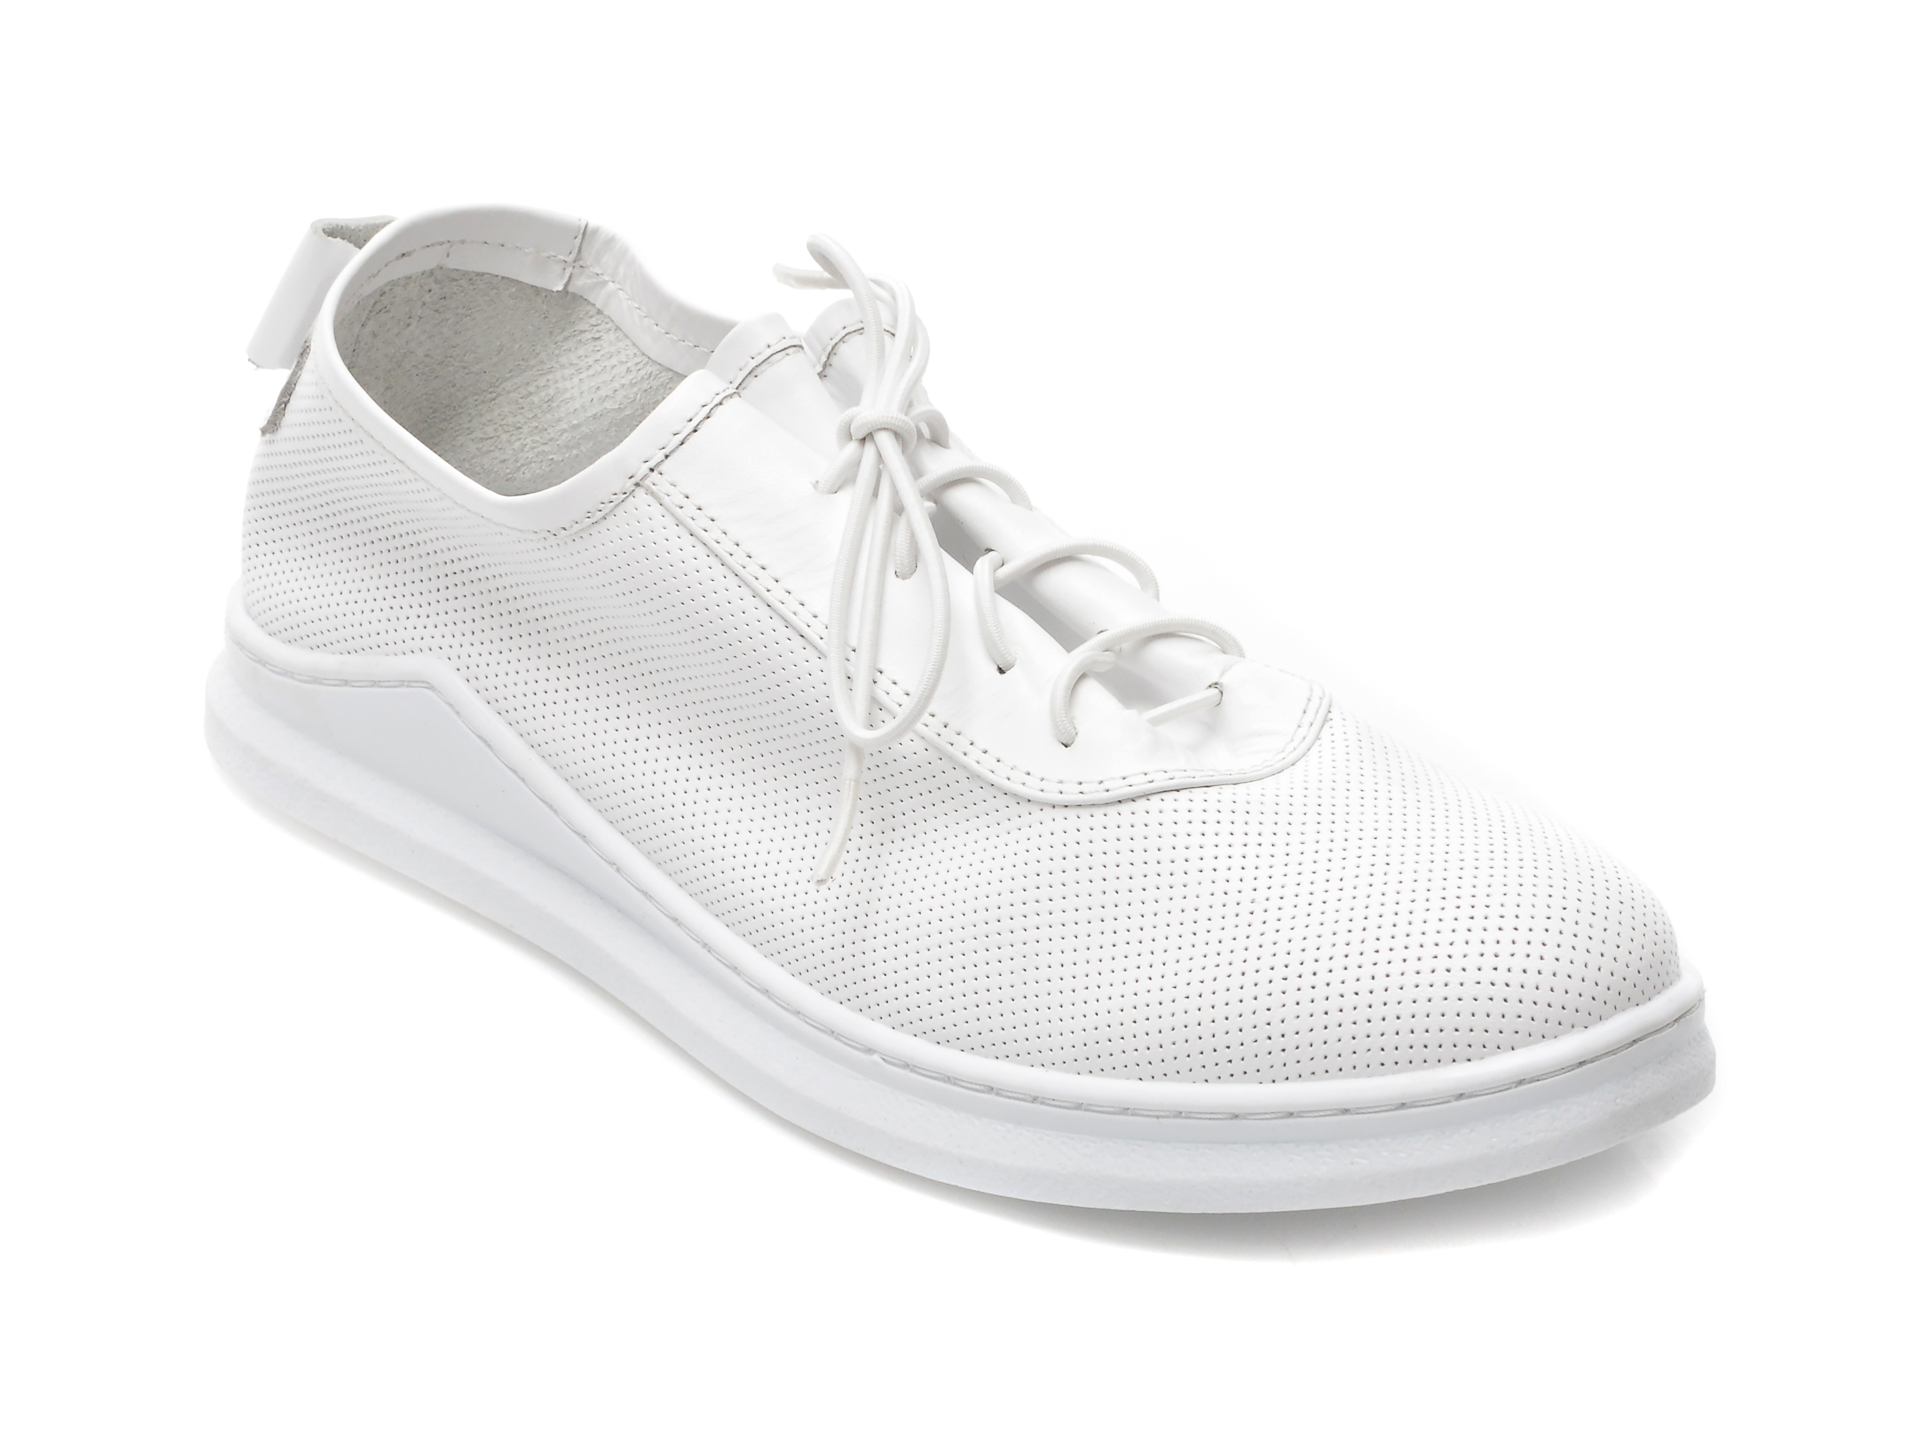 Pantofi LE BERDE albi, 3027, din piele naturala